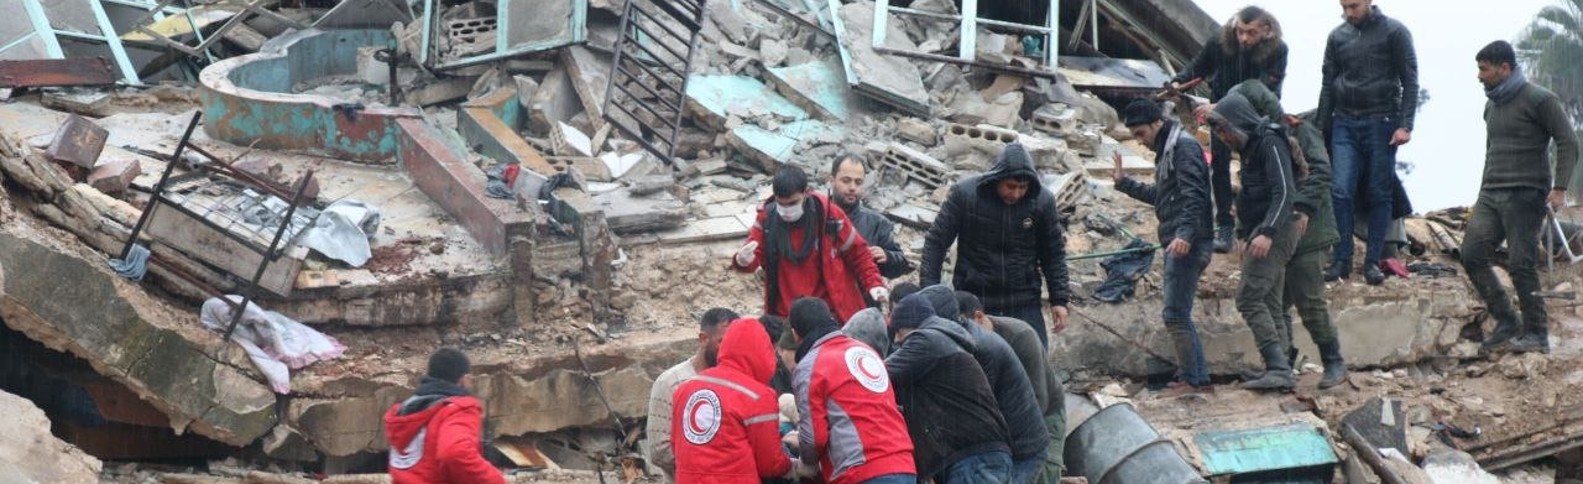 Un terremoto de magnitud 7,8 causa miles de víctimas en Turquía y Siria